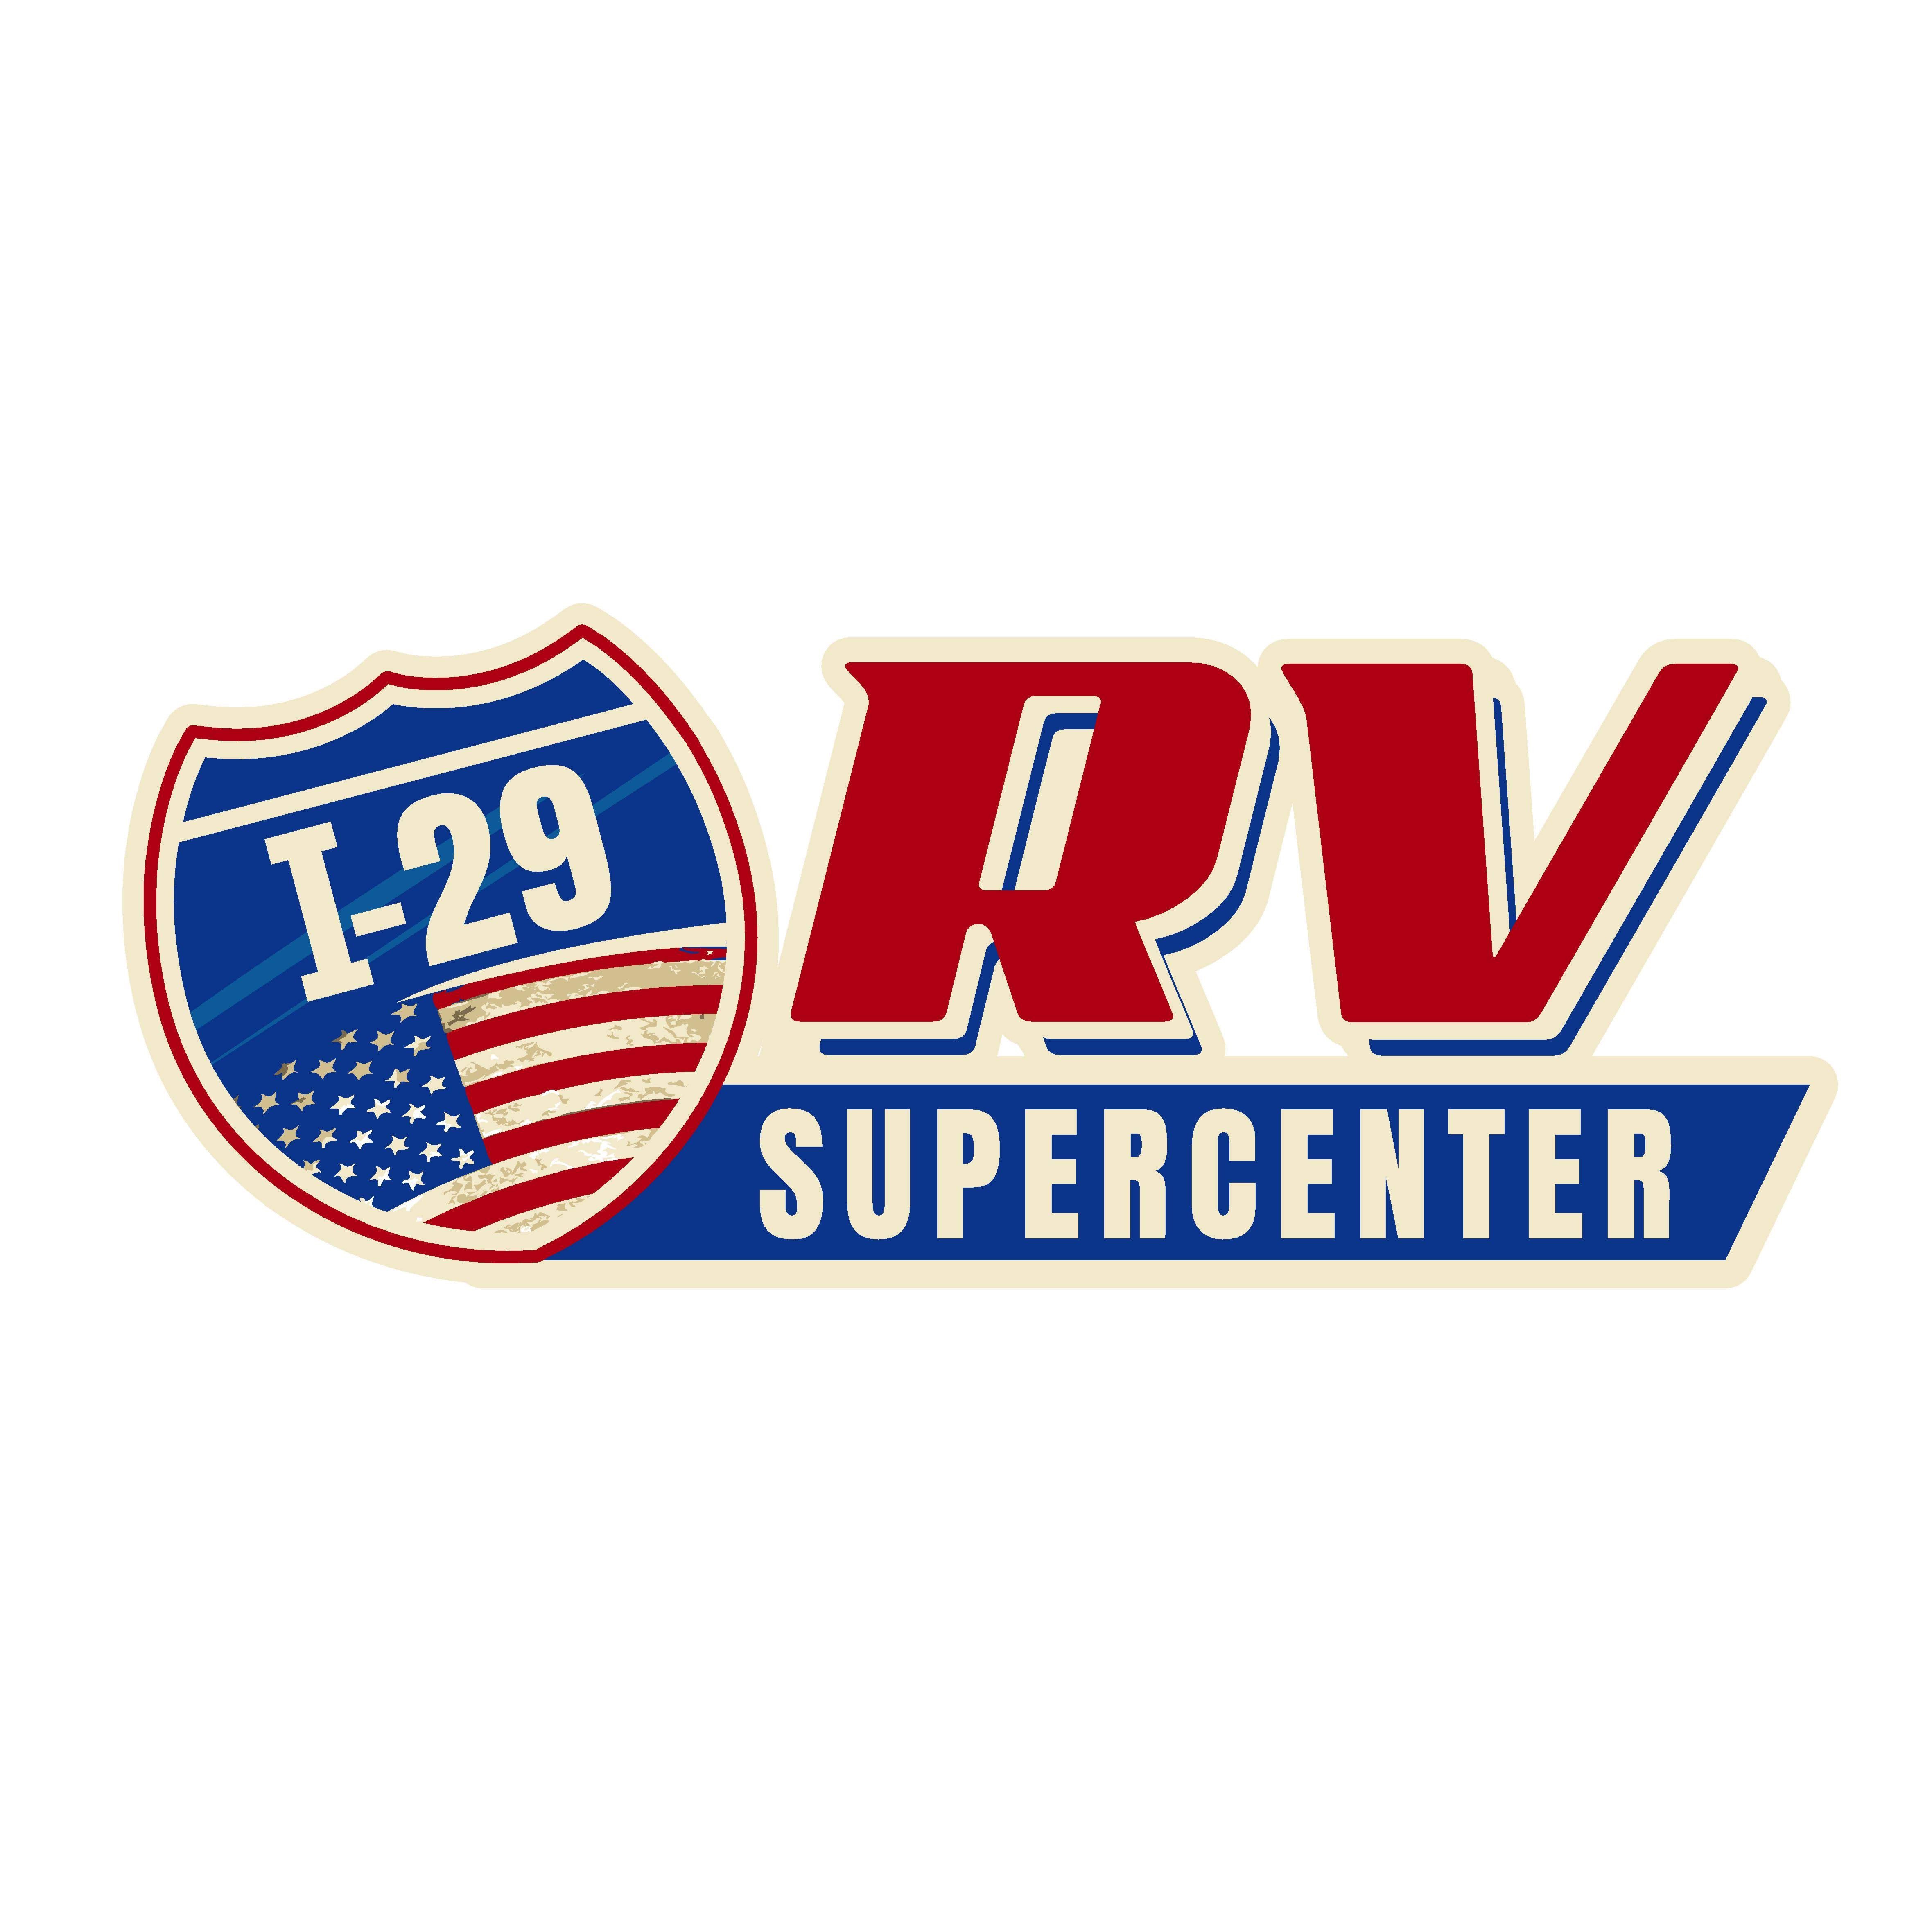 I-29 RV Supercenter